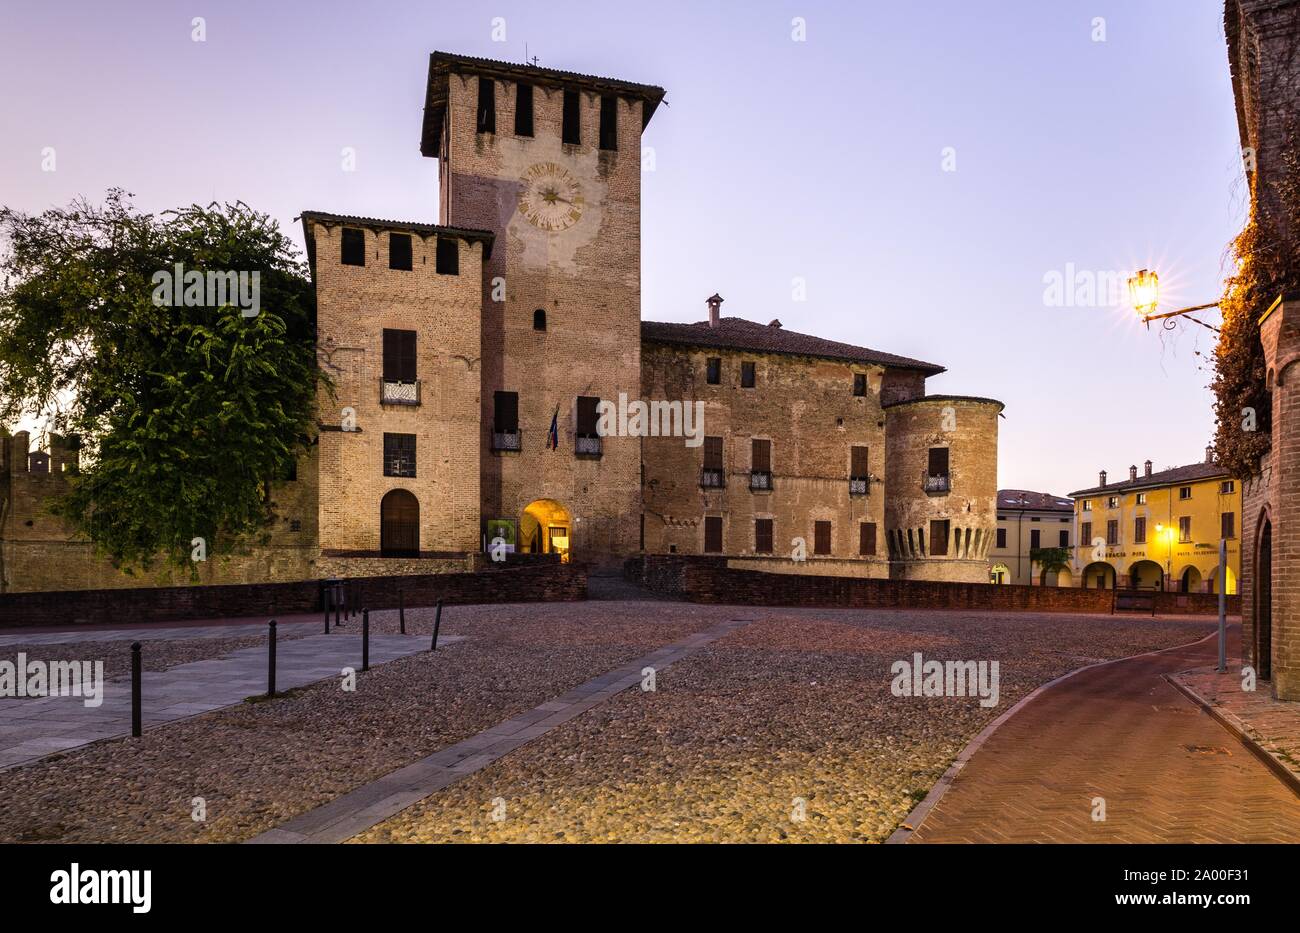 Crépuscule, centre ville avec château Rocca Sanvitale, Fontanellato, Province de Parme, Emilie-Romagne, Italie Banque D'Images